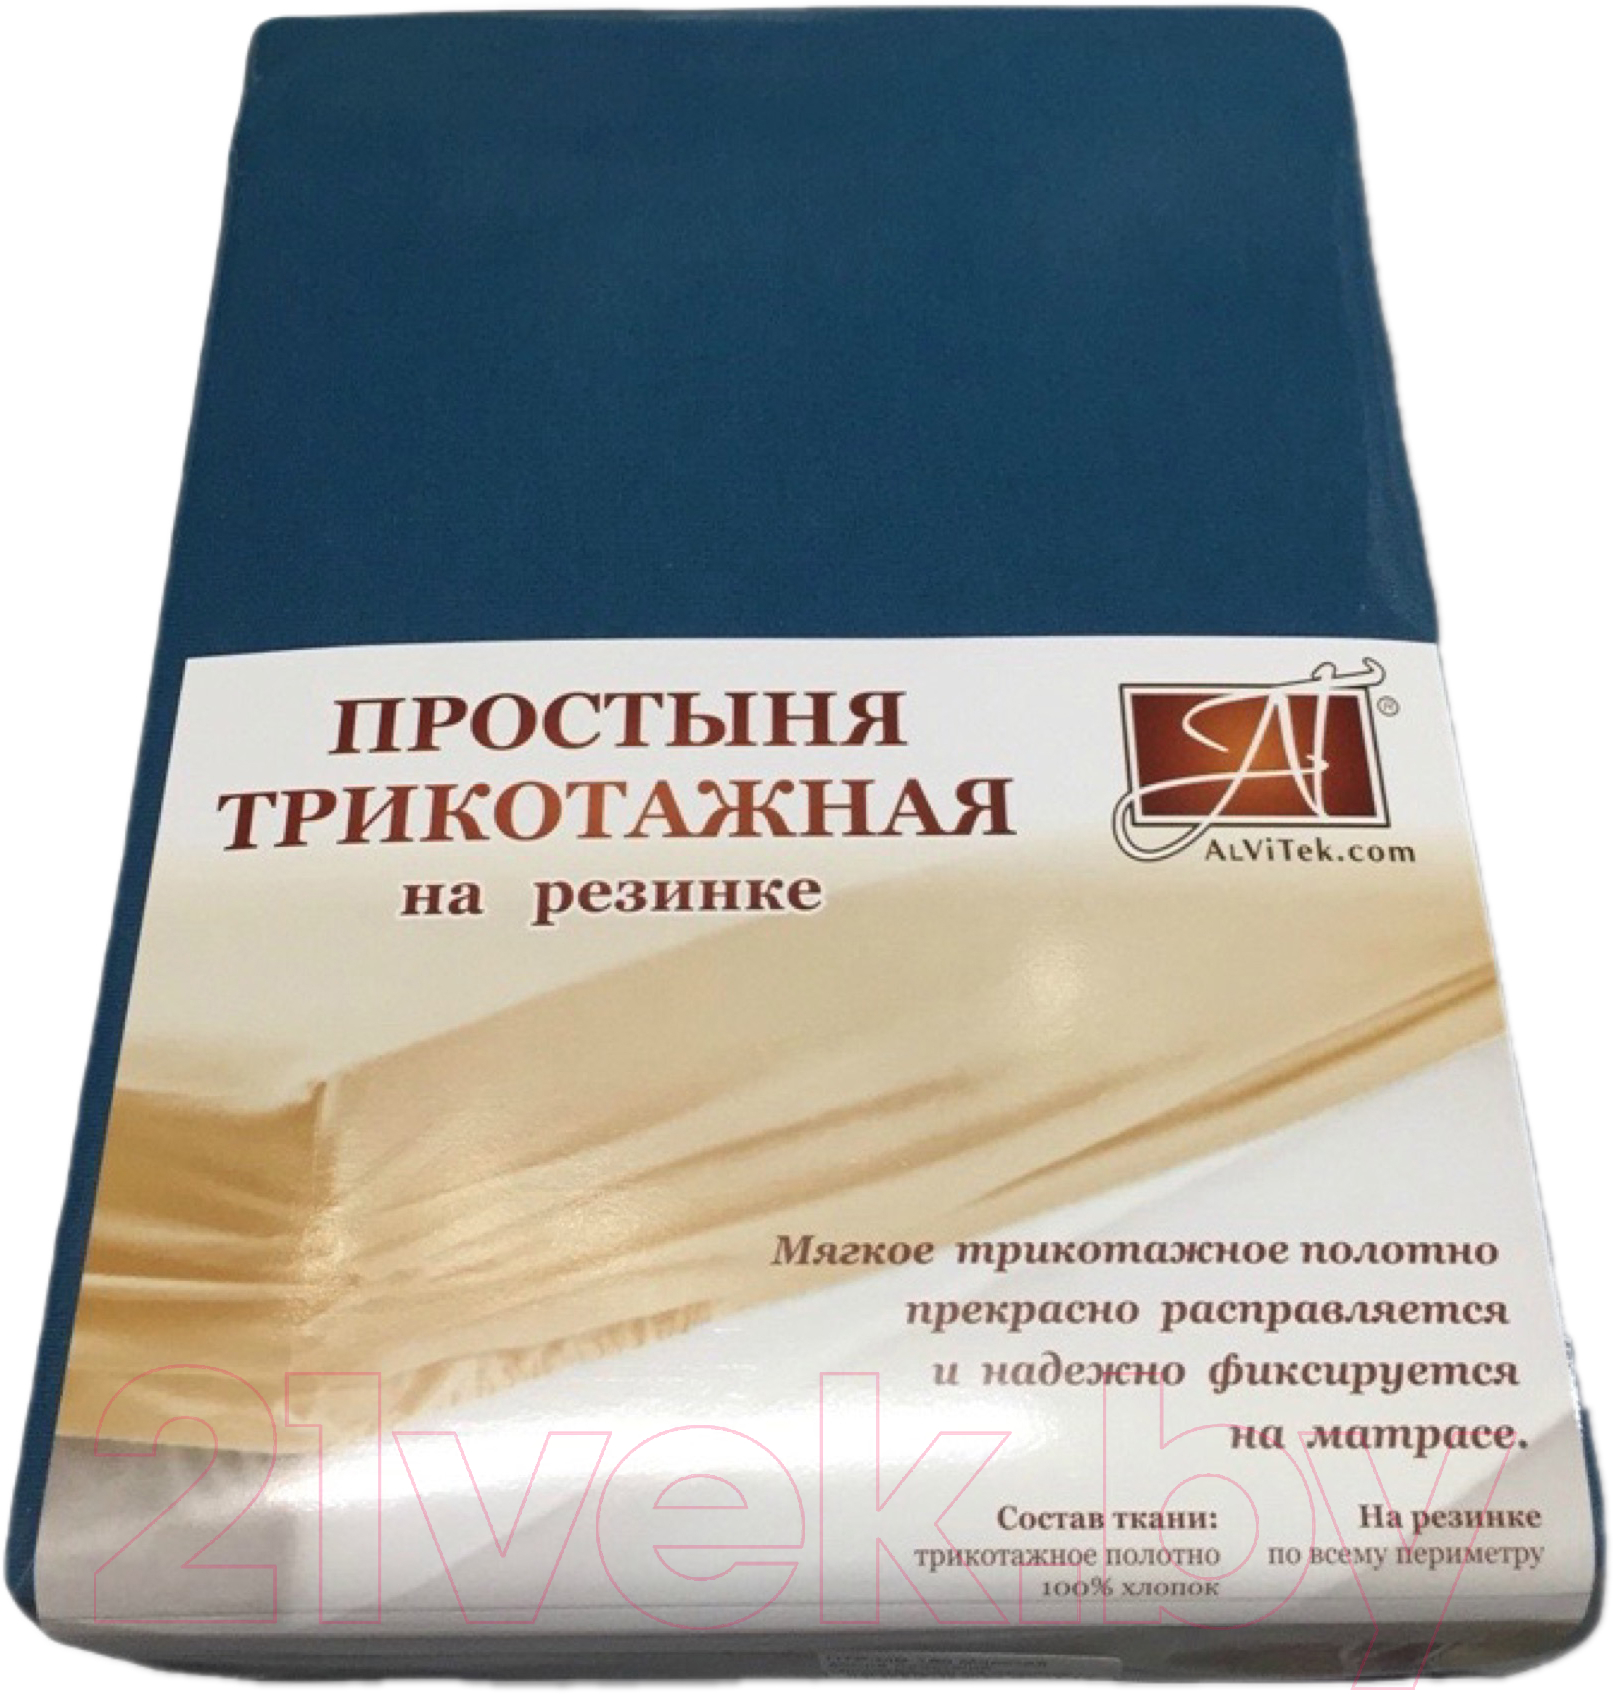 Простыня AlViTek Трикотажная на резинке 180x200 / ПТР-МВ-180(180)